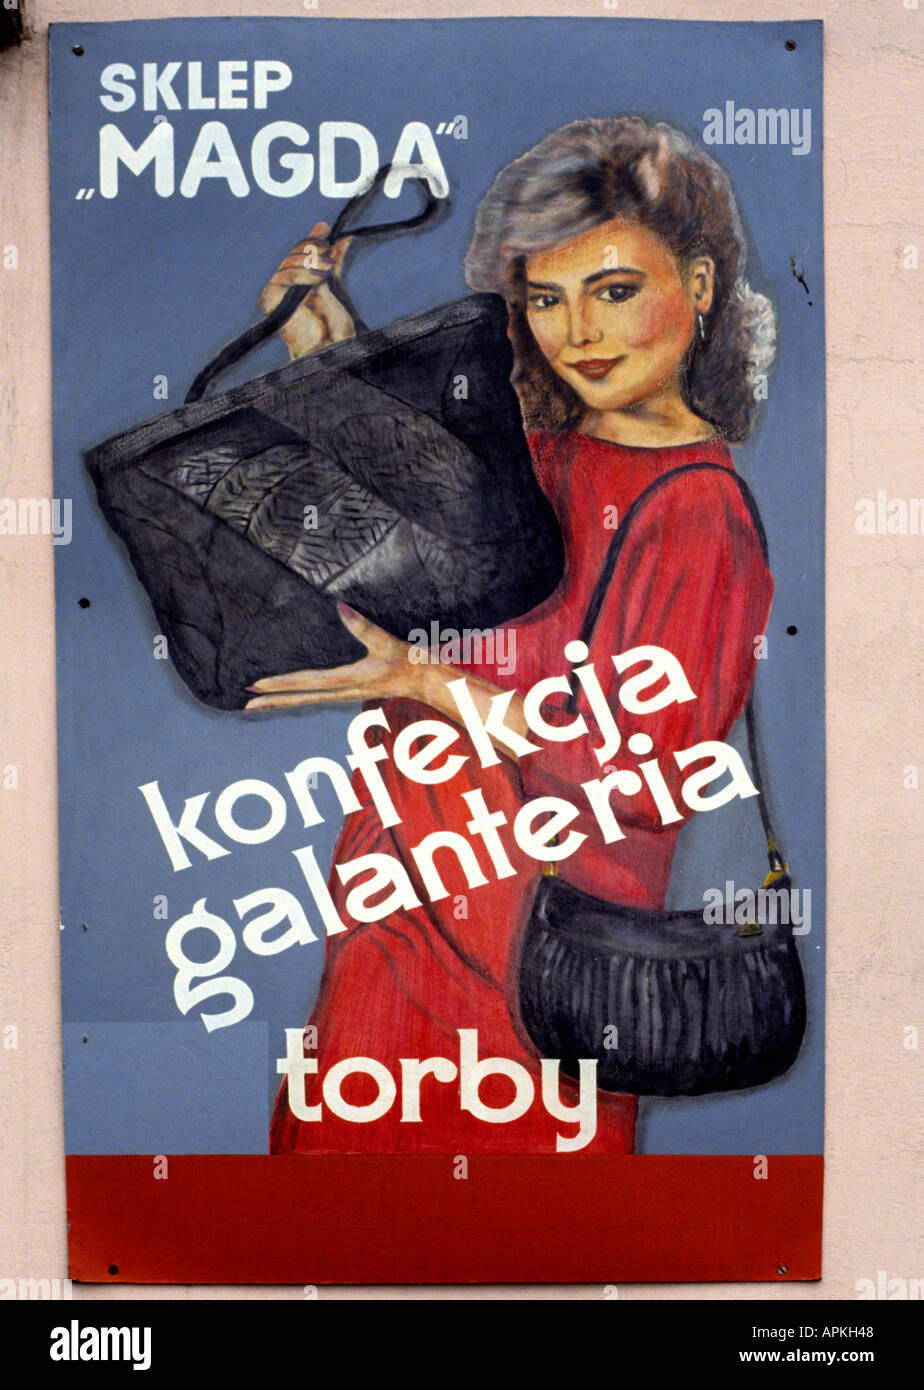 Poland Fashion Polish Girl 1975 billboard woman Stock Photo - Alamy